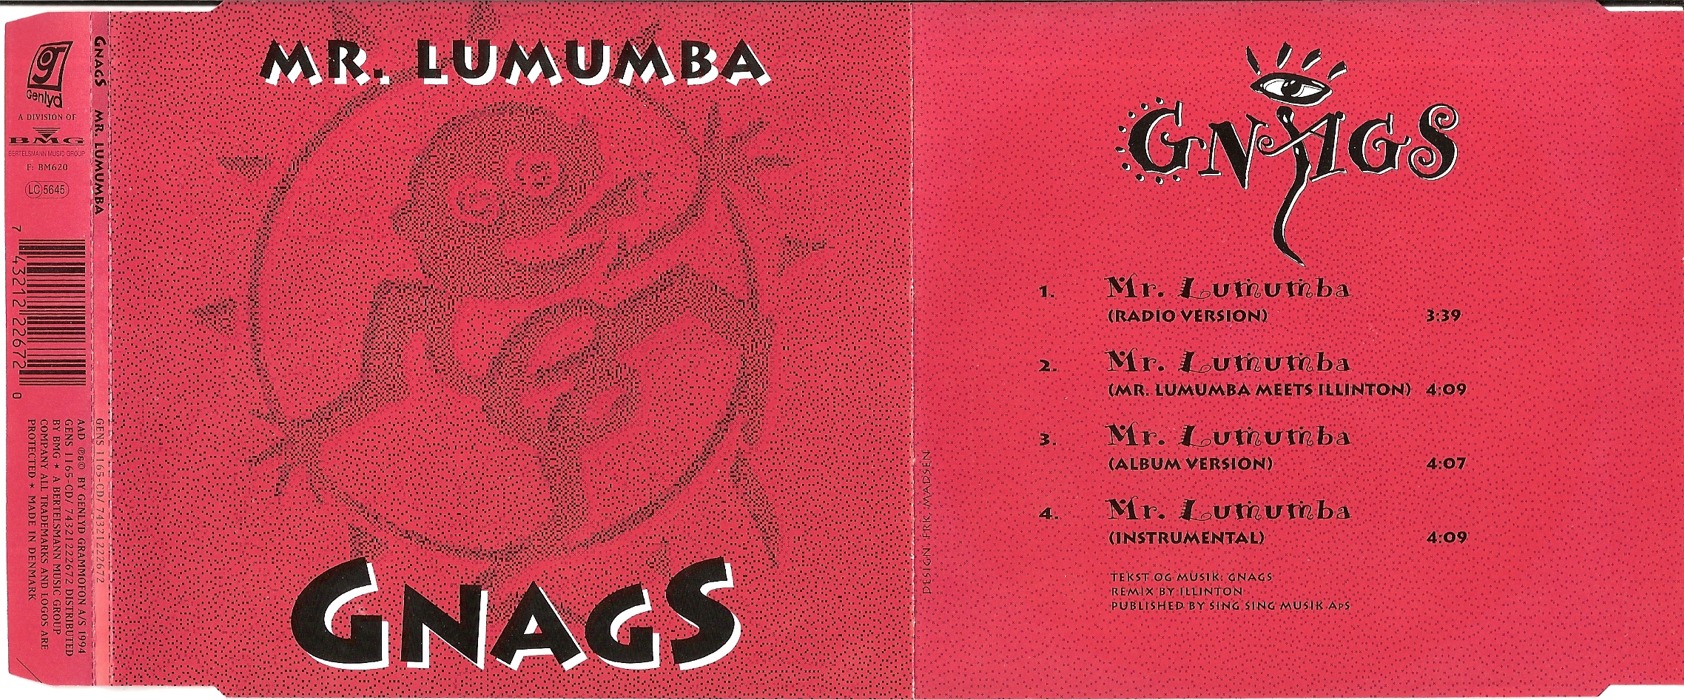 Mr. Lumumba - udfoldet omslag